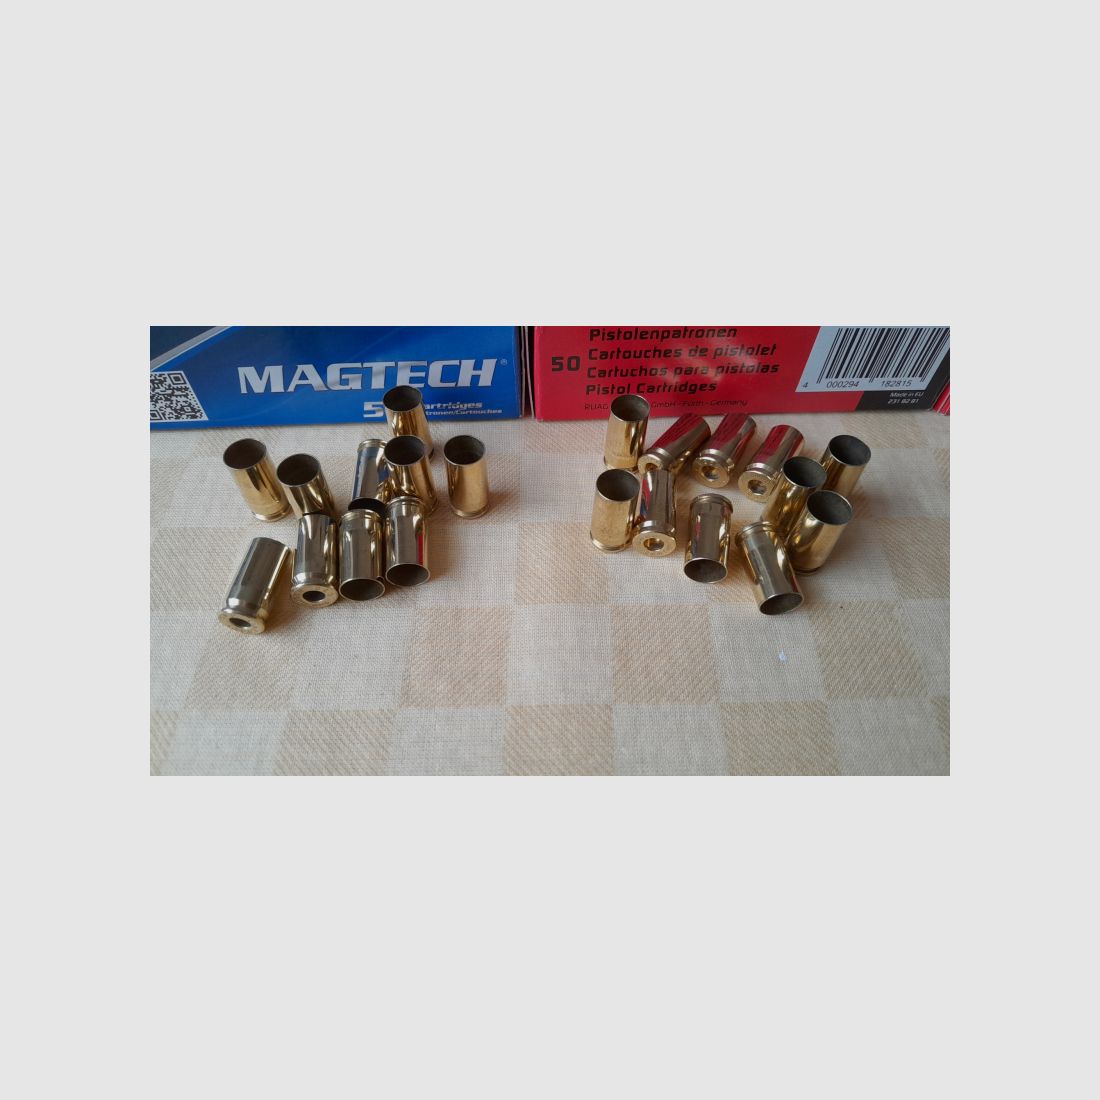 600 Hülsen 9mm 9x19 von Magtech und Geco